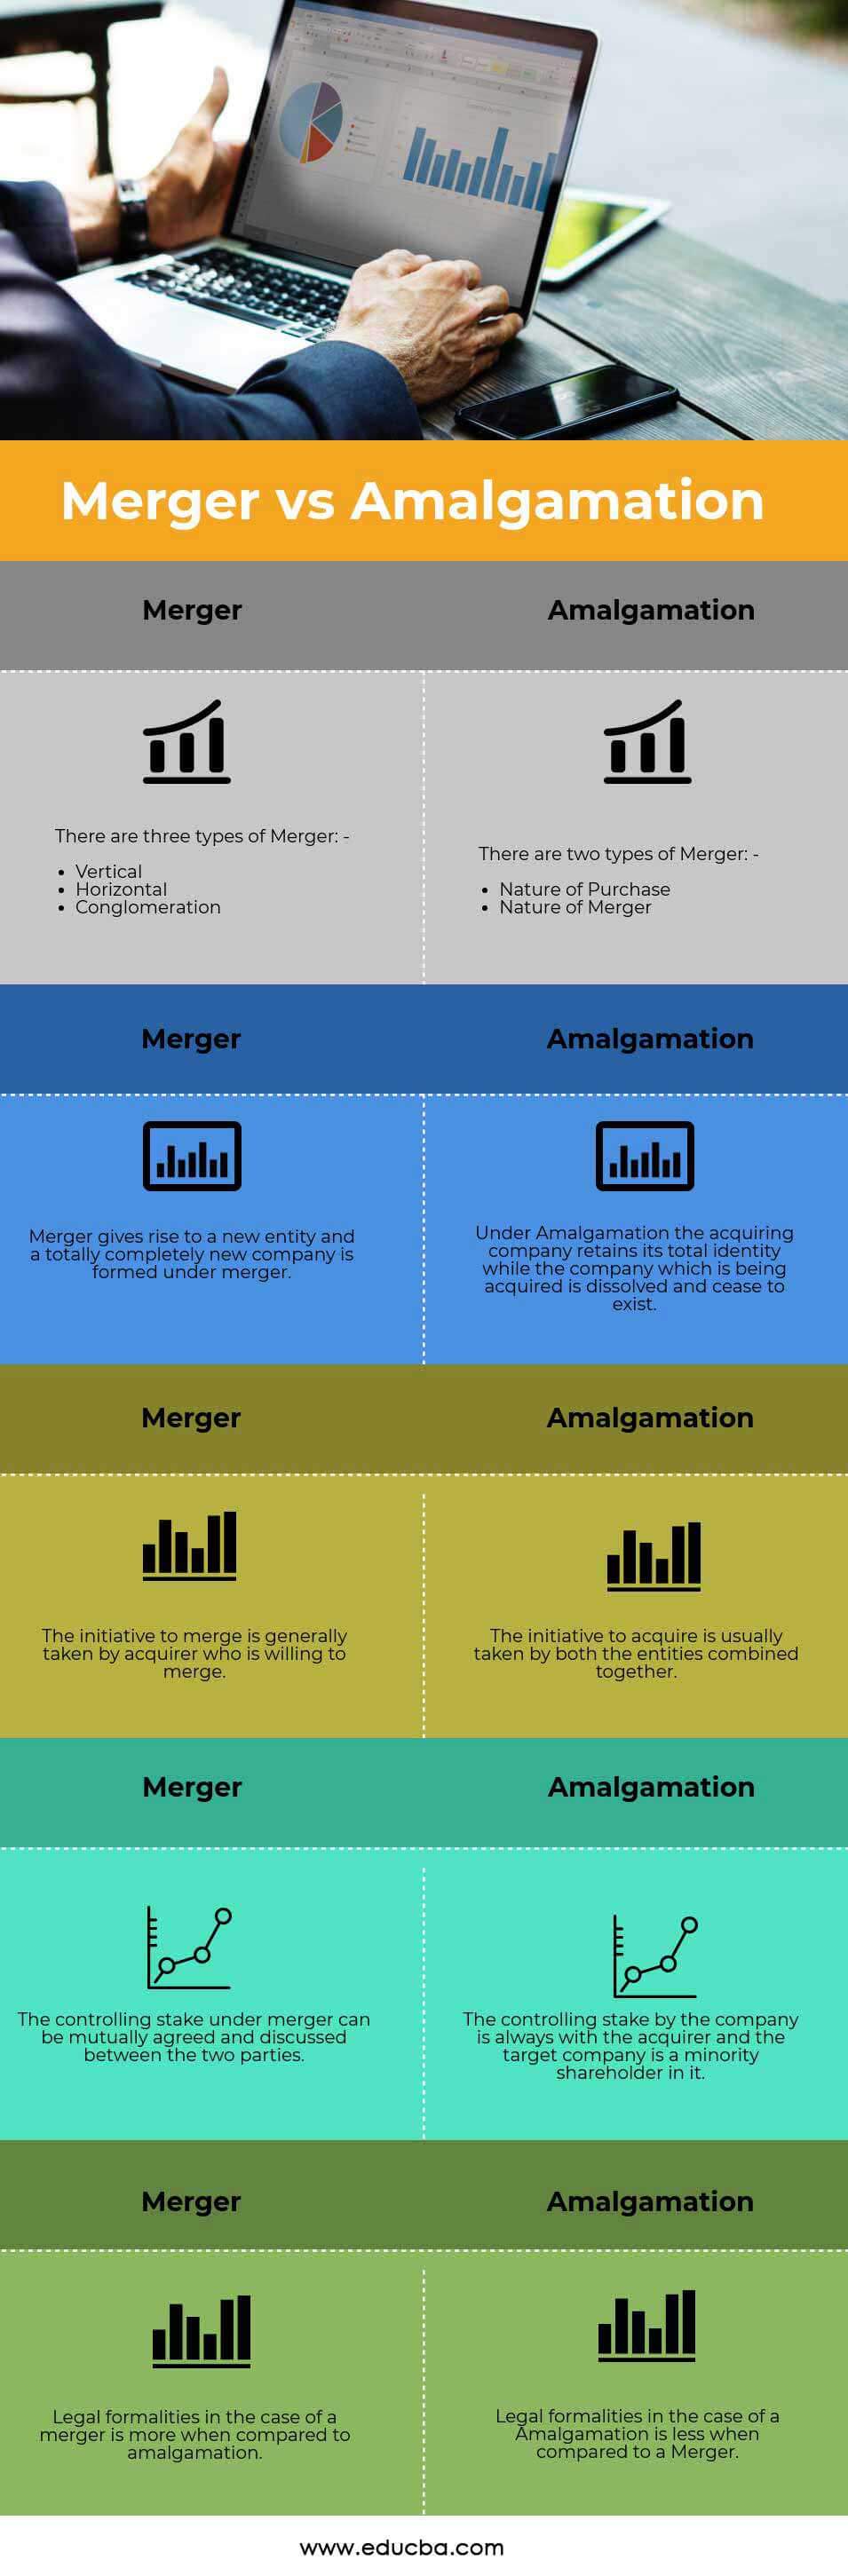 Merger-vs-Amalgamation-info